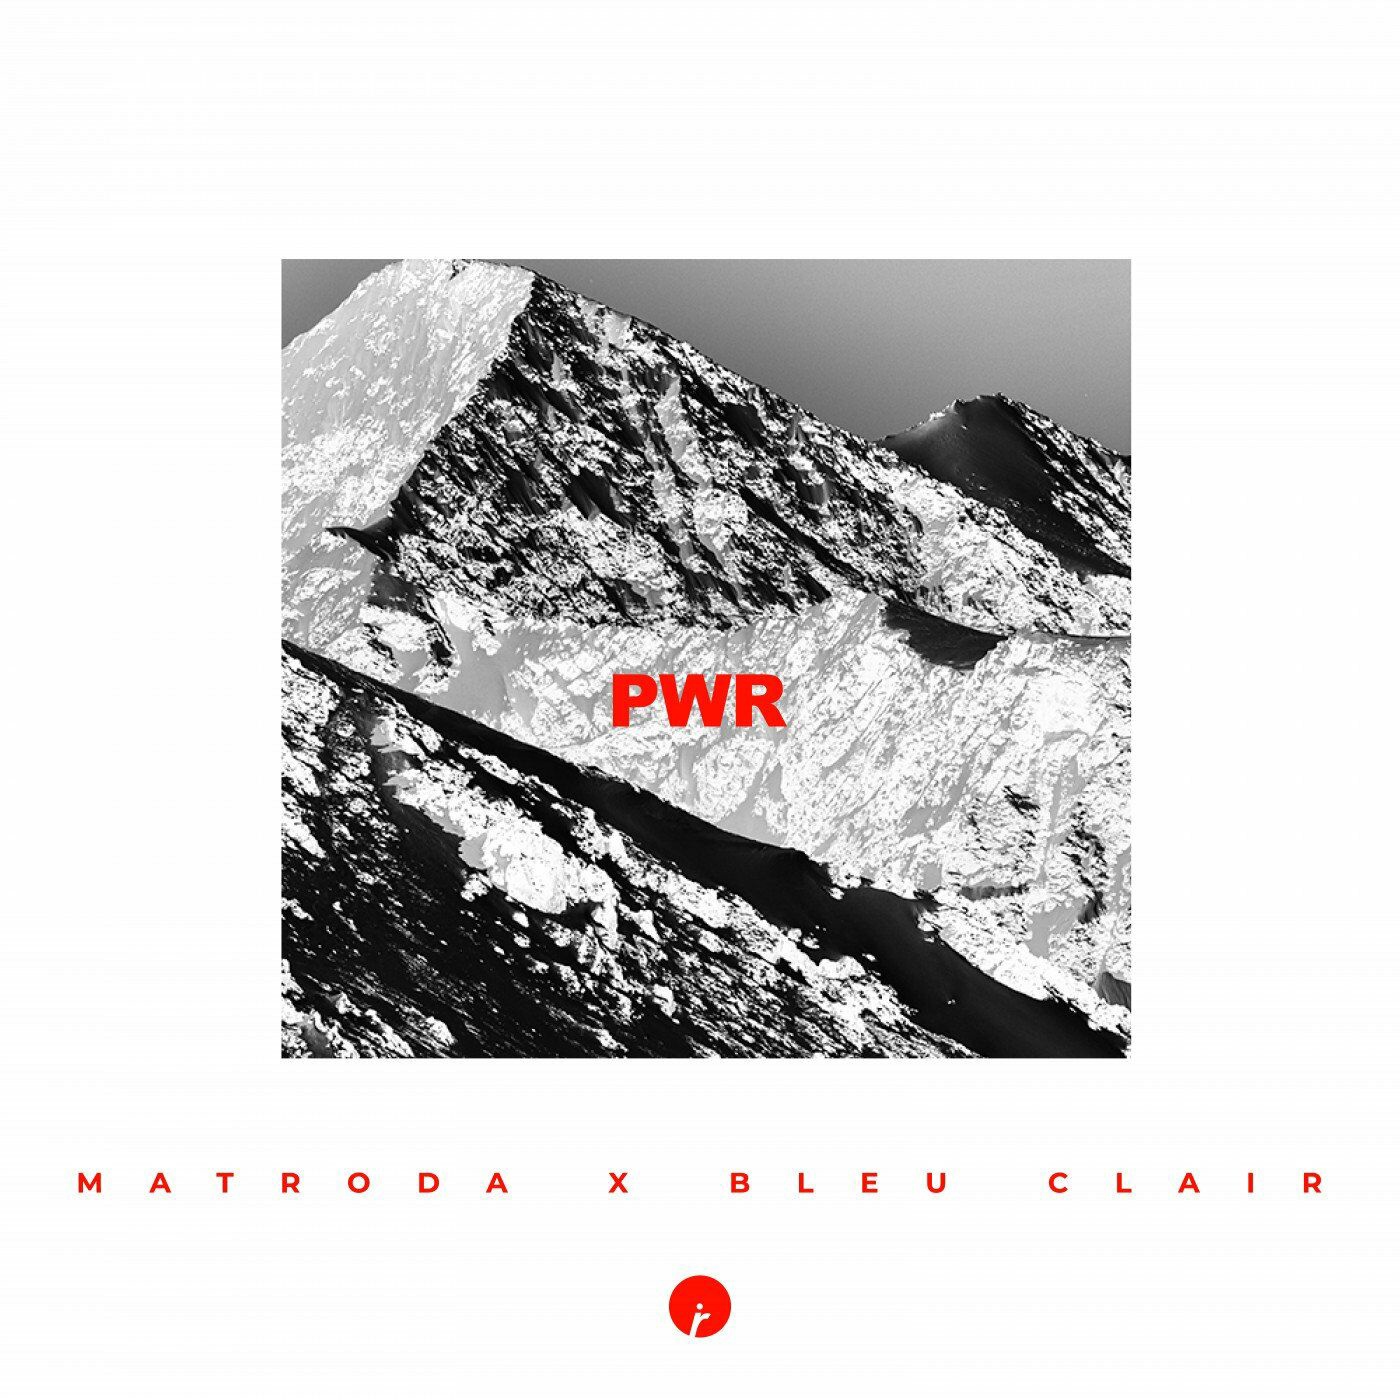 Matroda & Bleu Clair - PWR (Extended Mix)